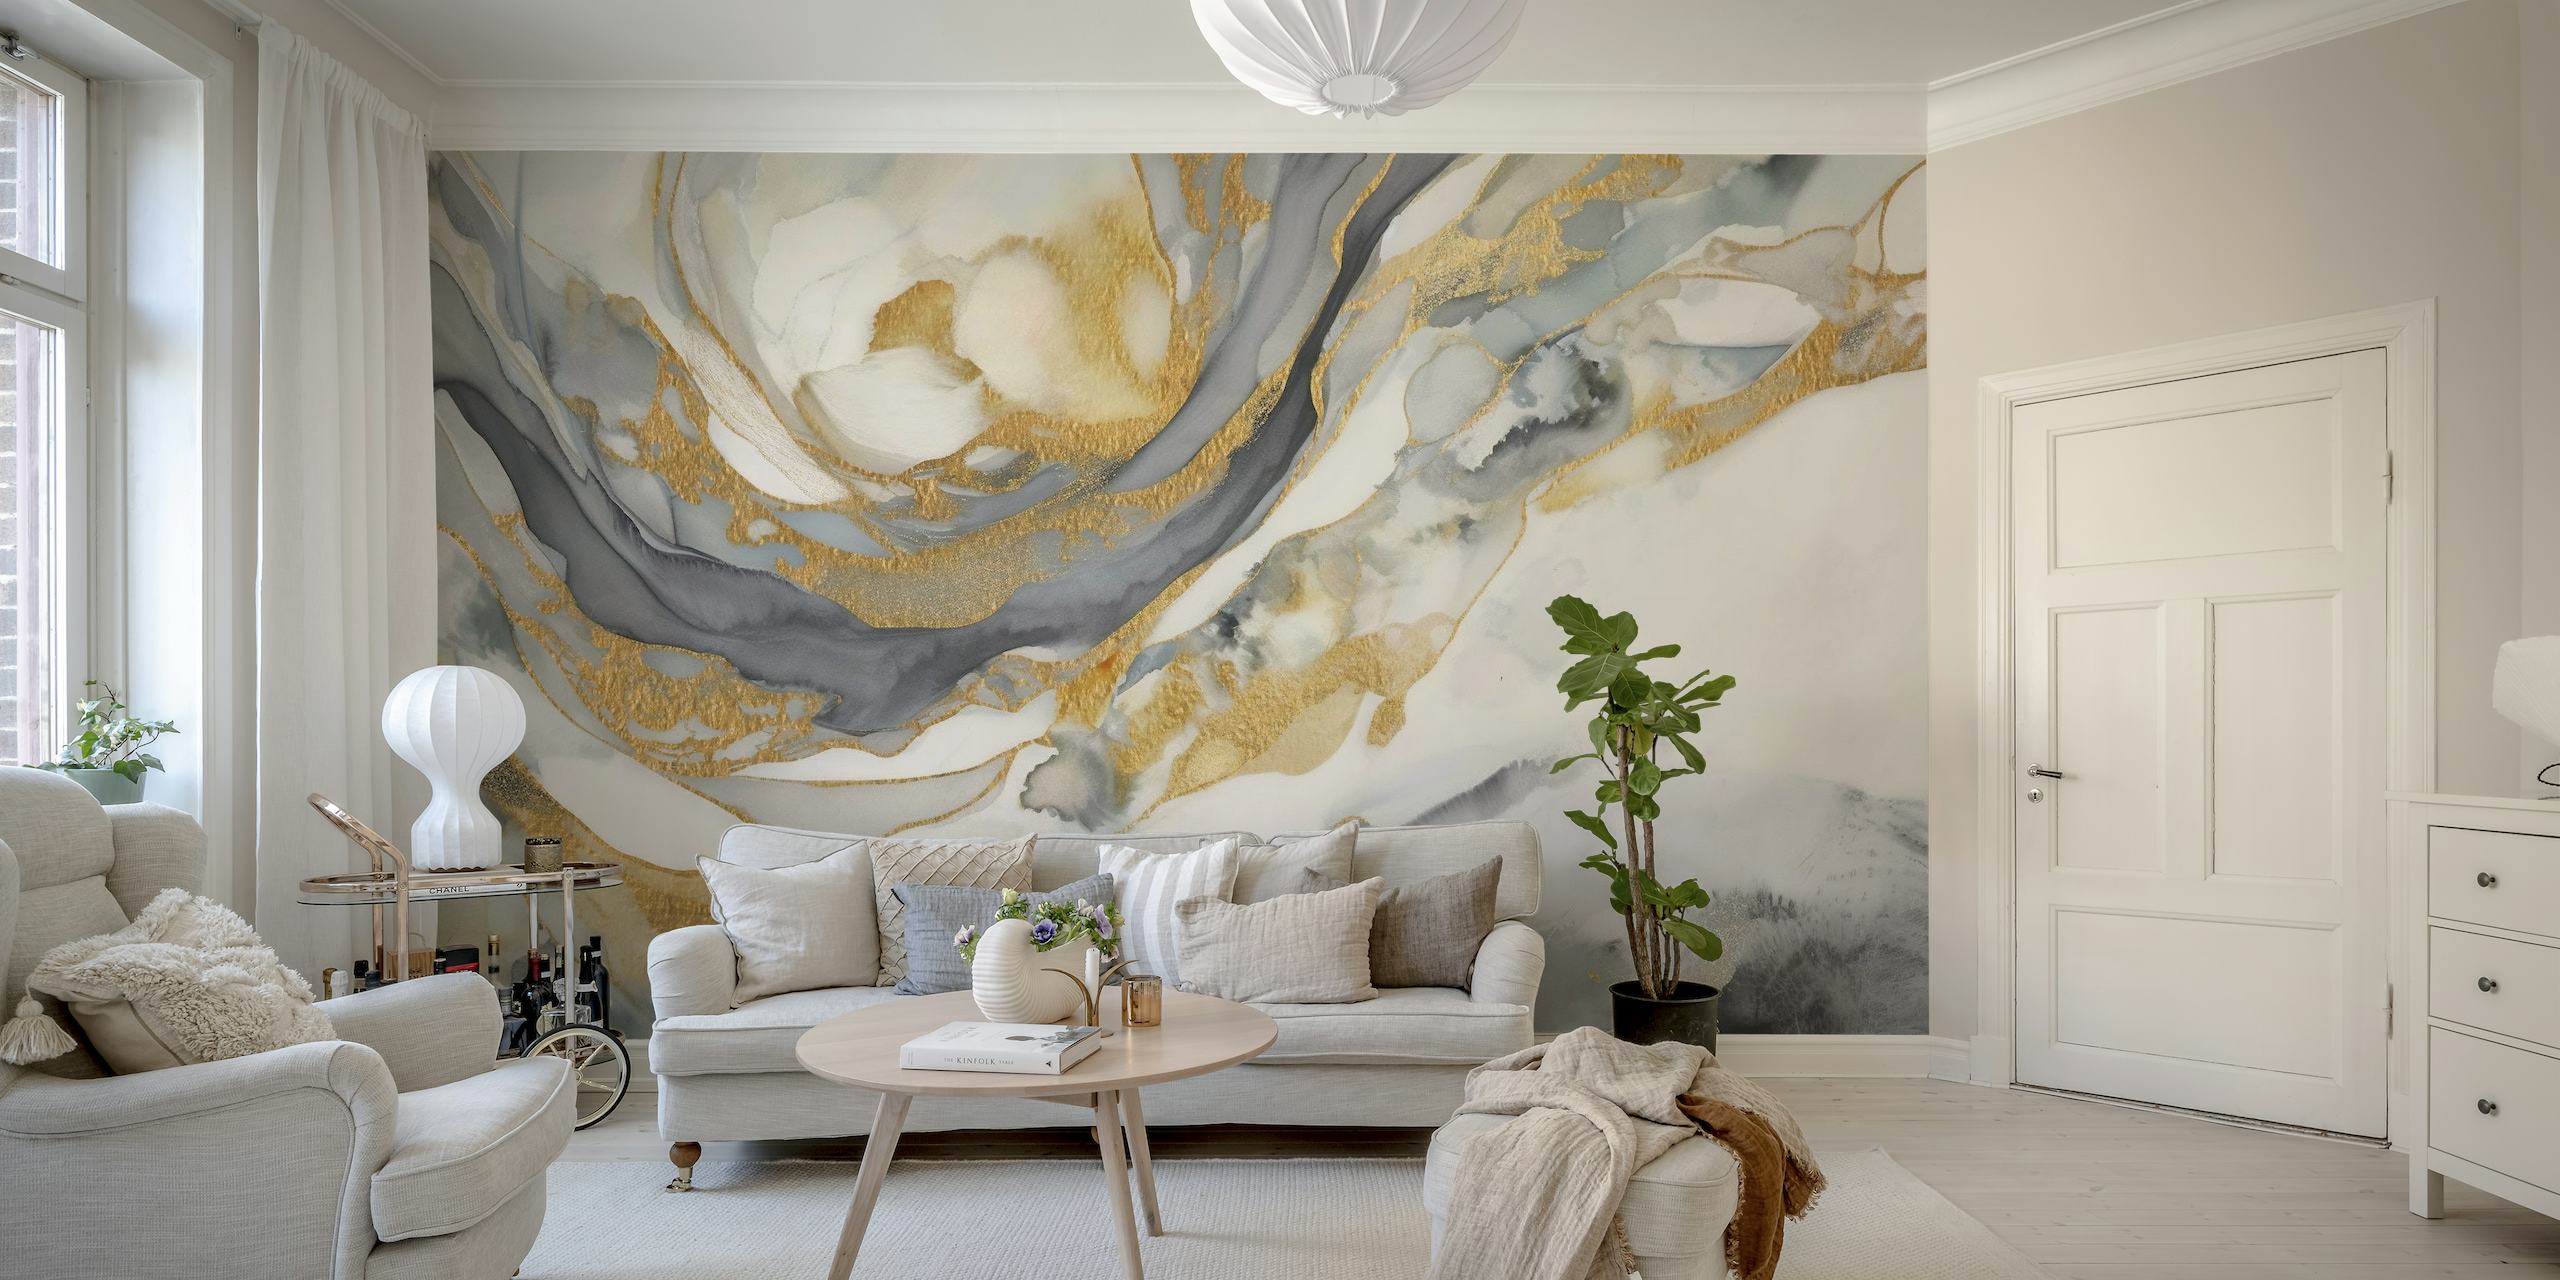 Abstract fotobehang met wervelende gouden, grijze en witte marmerpatronen